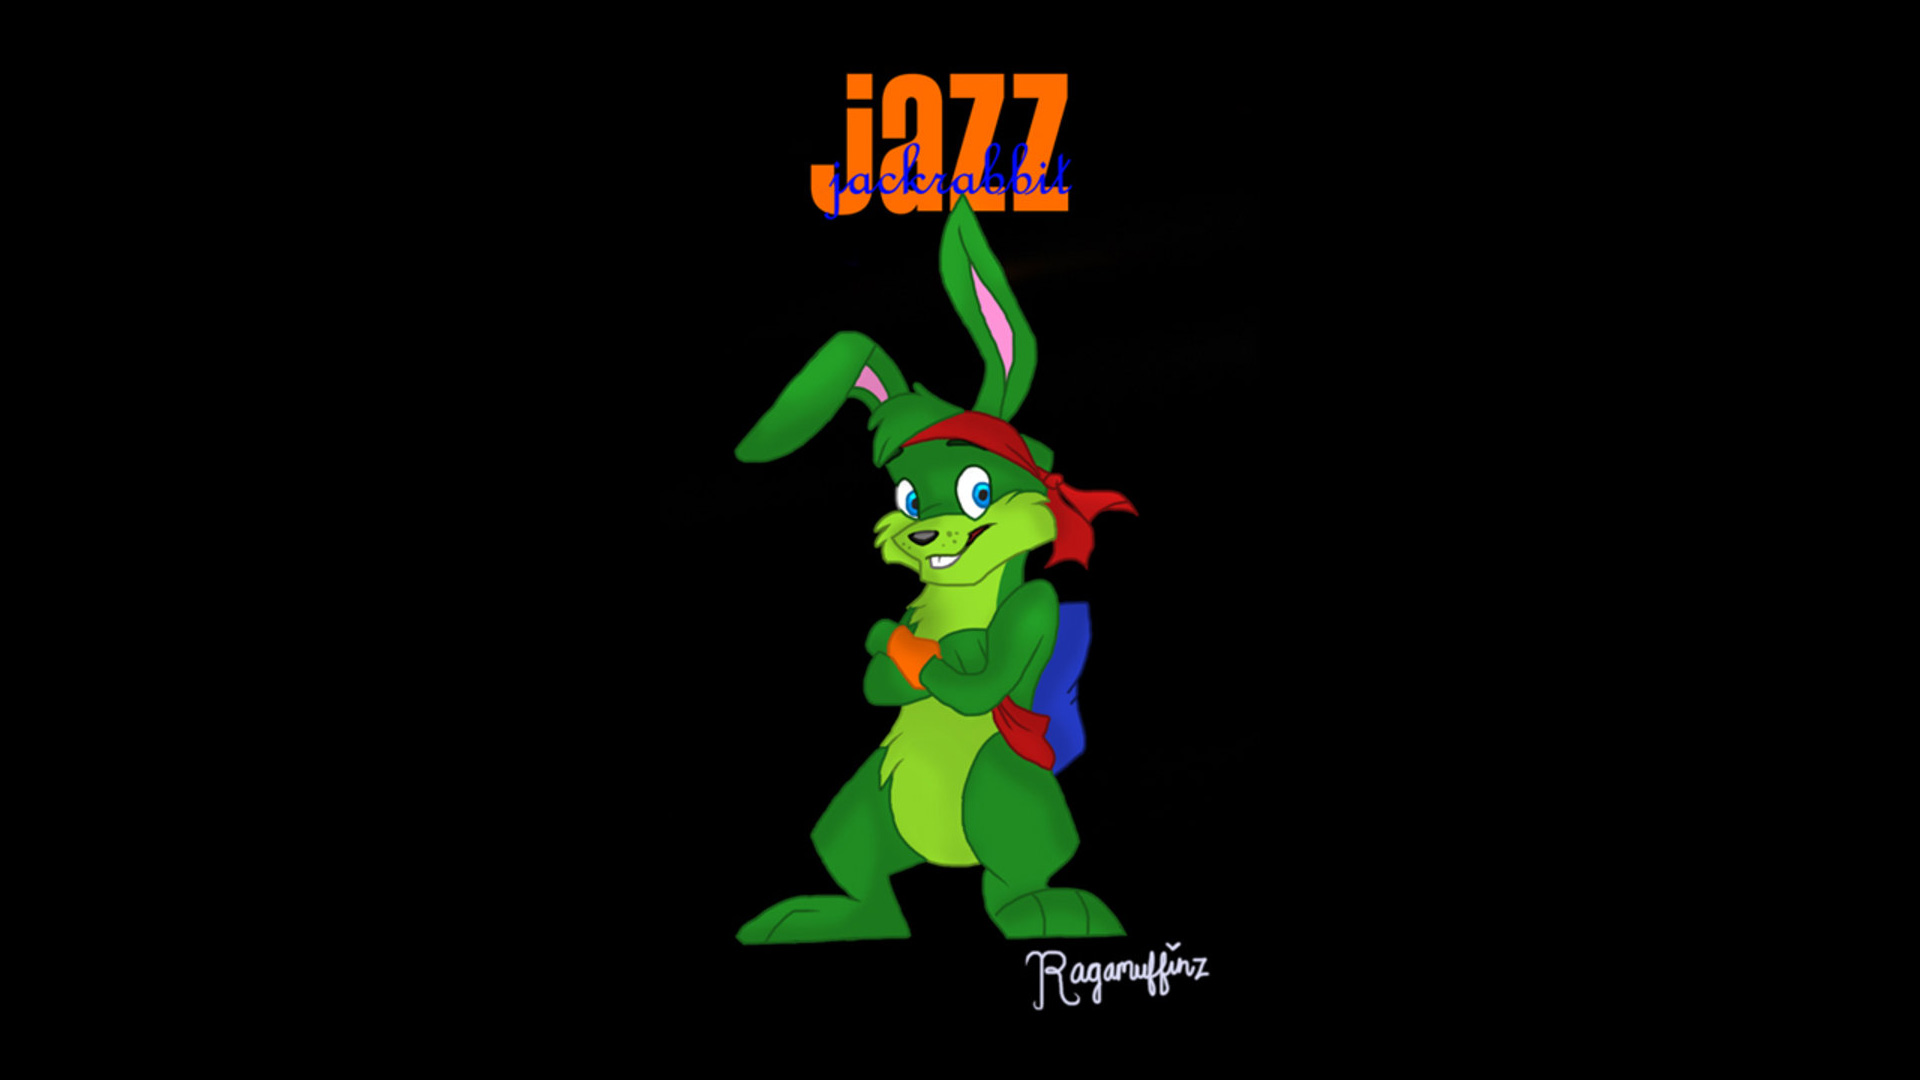 download jazz jackrabbit game online